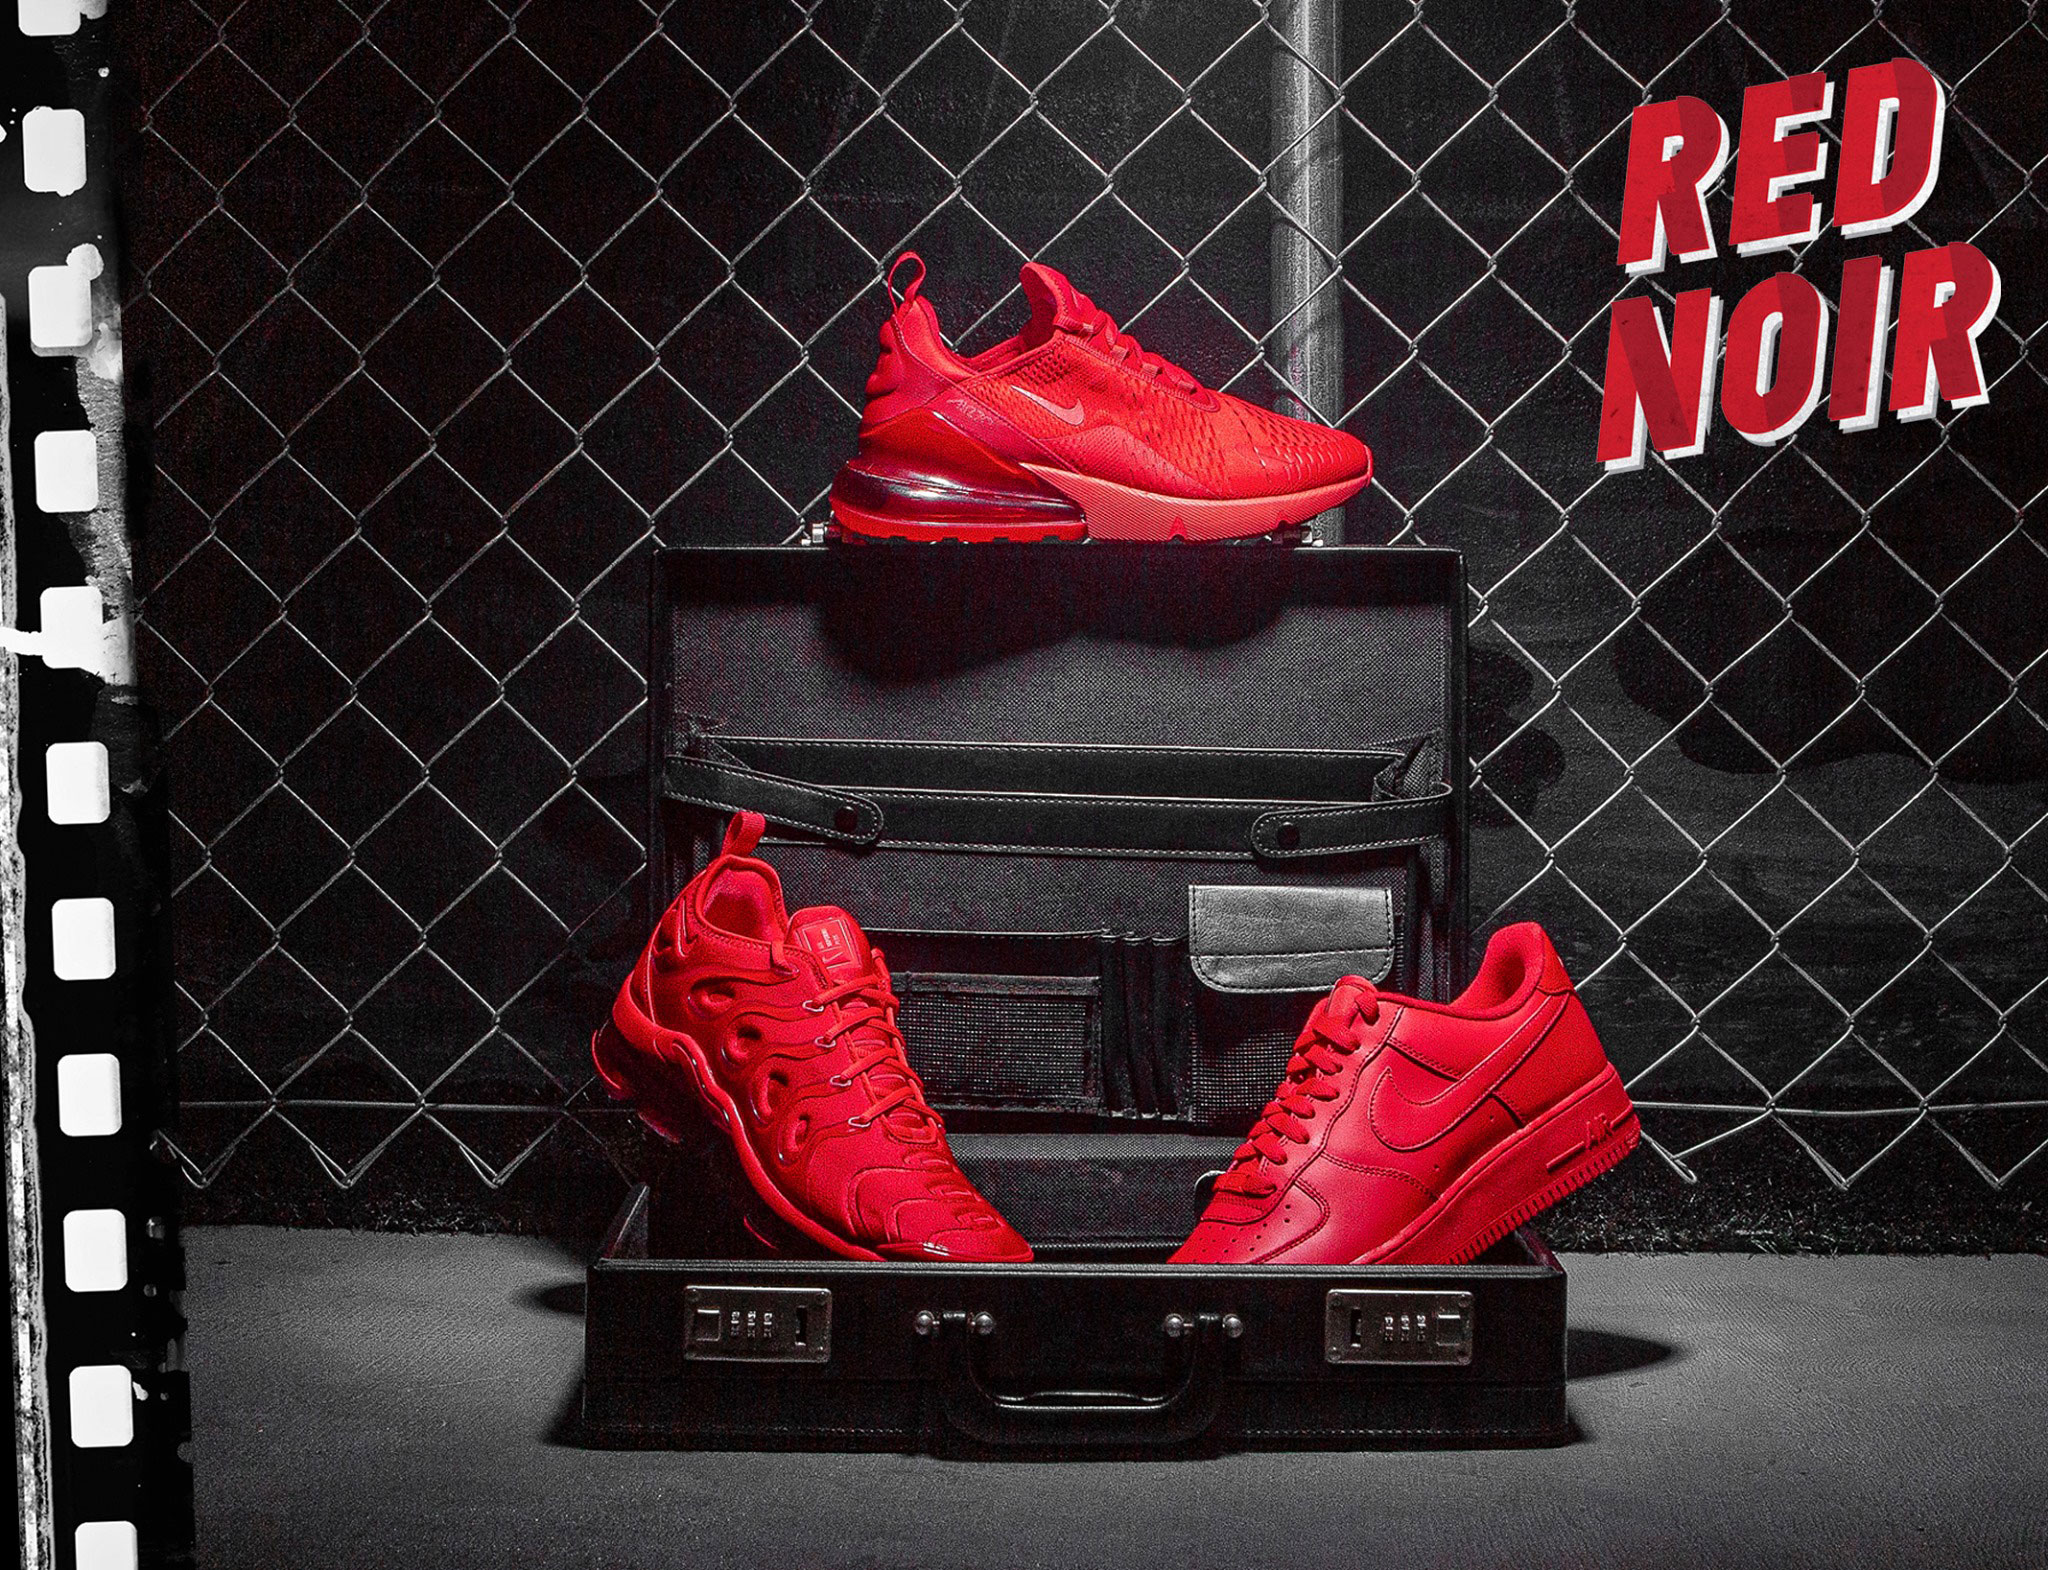 nike-red-noir-sneaker-pack